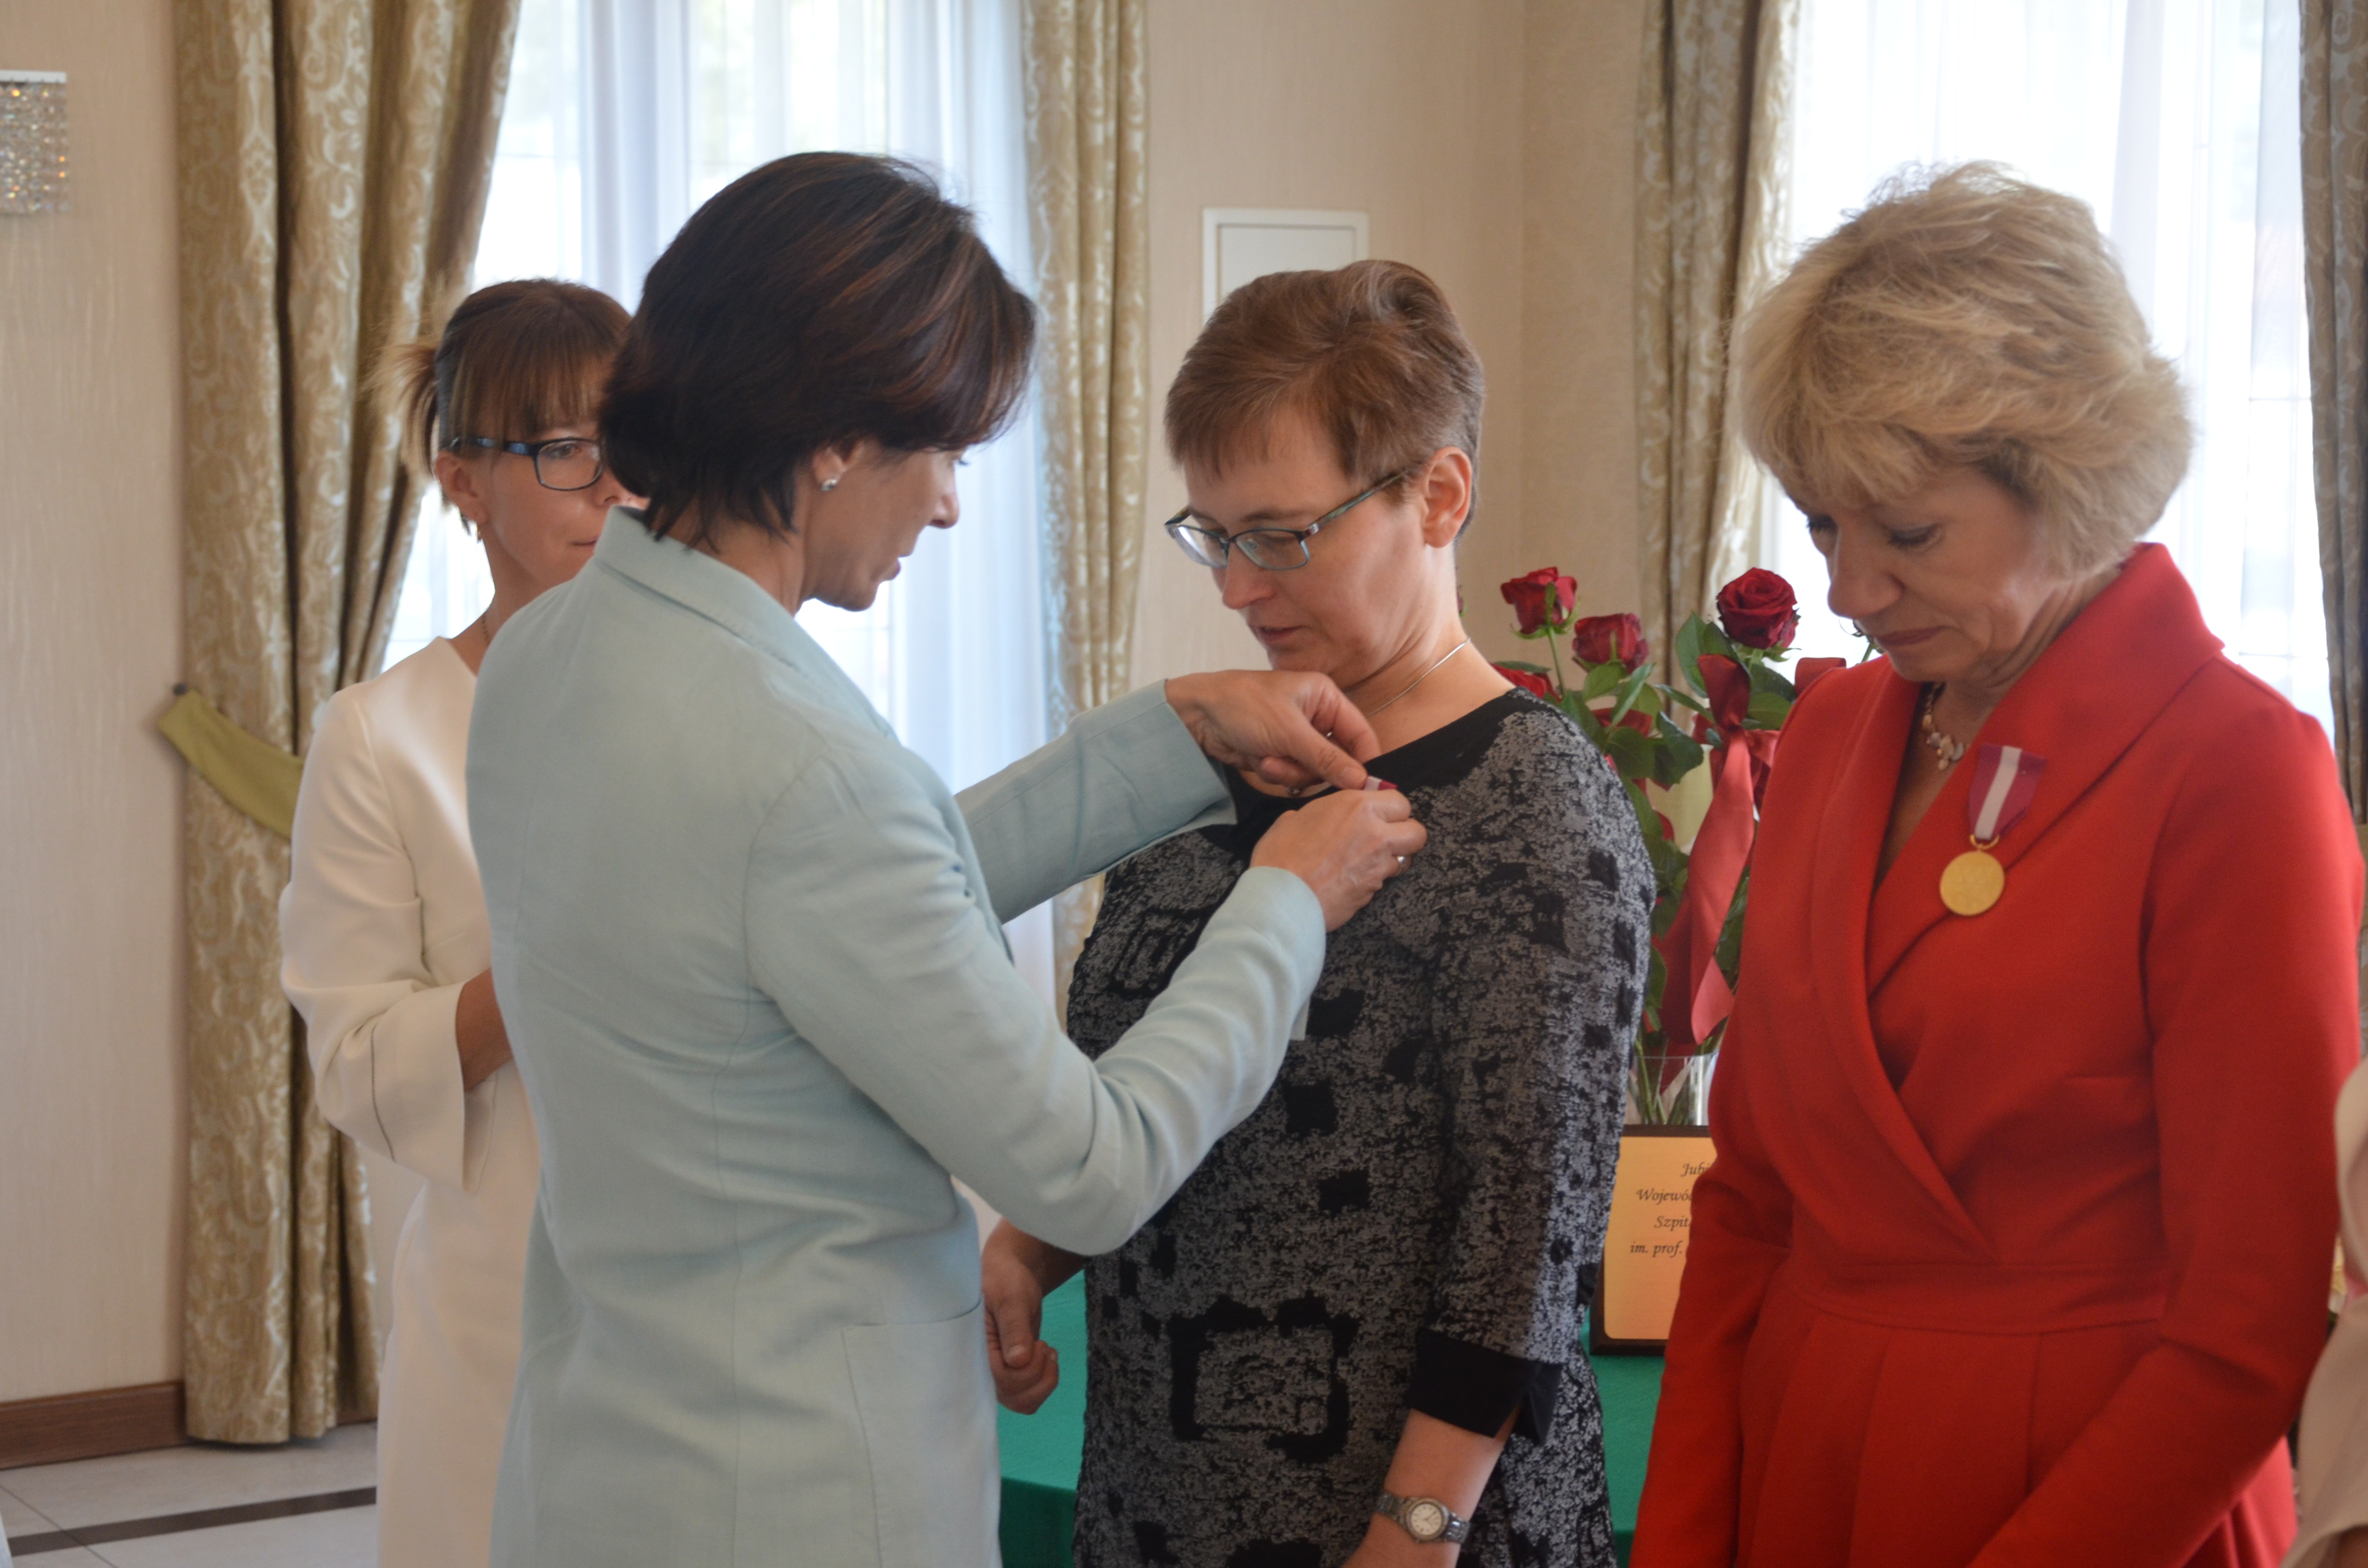 Jubileusz 45-lecia Wojewódzkiego Podkarpackiego Szpitala Psychiatrycznego - Odznaczenie Medalami za Długoletnią Służbę